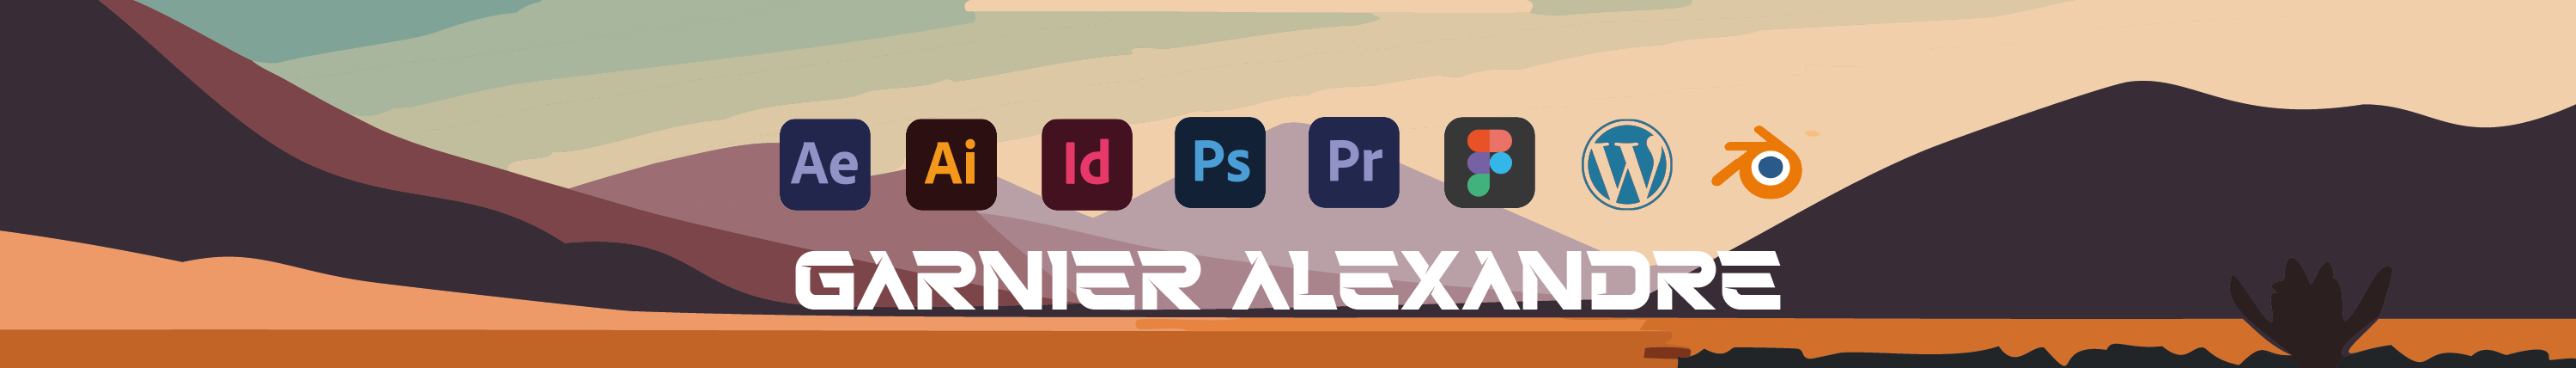 Alexandre Garnier's profile banner